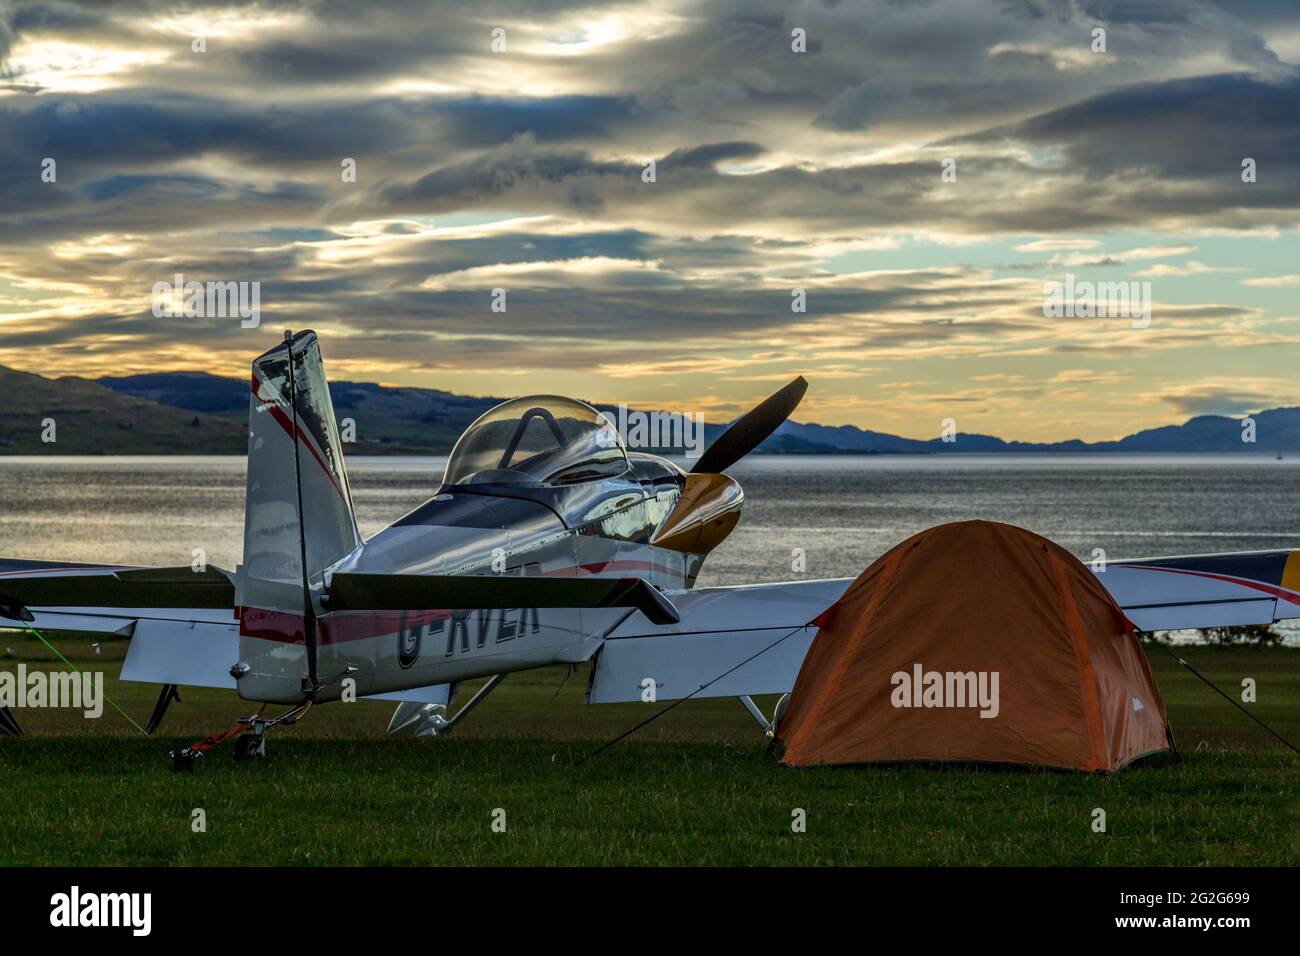 Ein Van-RV-4-Flugzeug, G-RVER, auf dem Glenforsa Airfield, Isle of Mull, Schottland. Pilot hat neben dem Flugzeug ein Zelt aufgeschlagen. Stockfoto